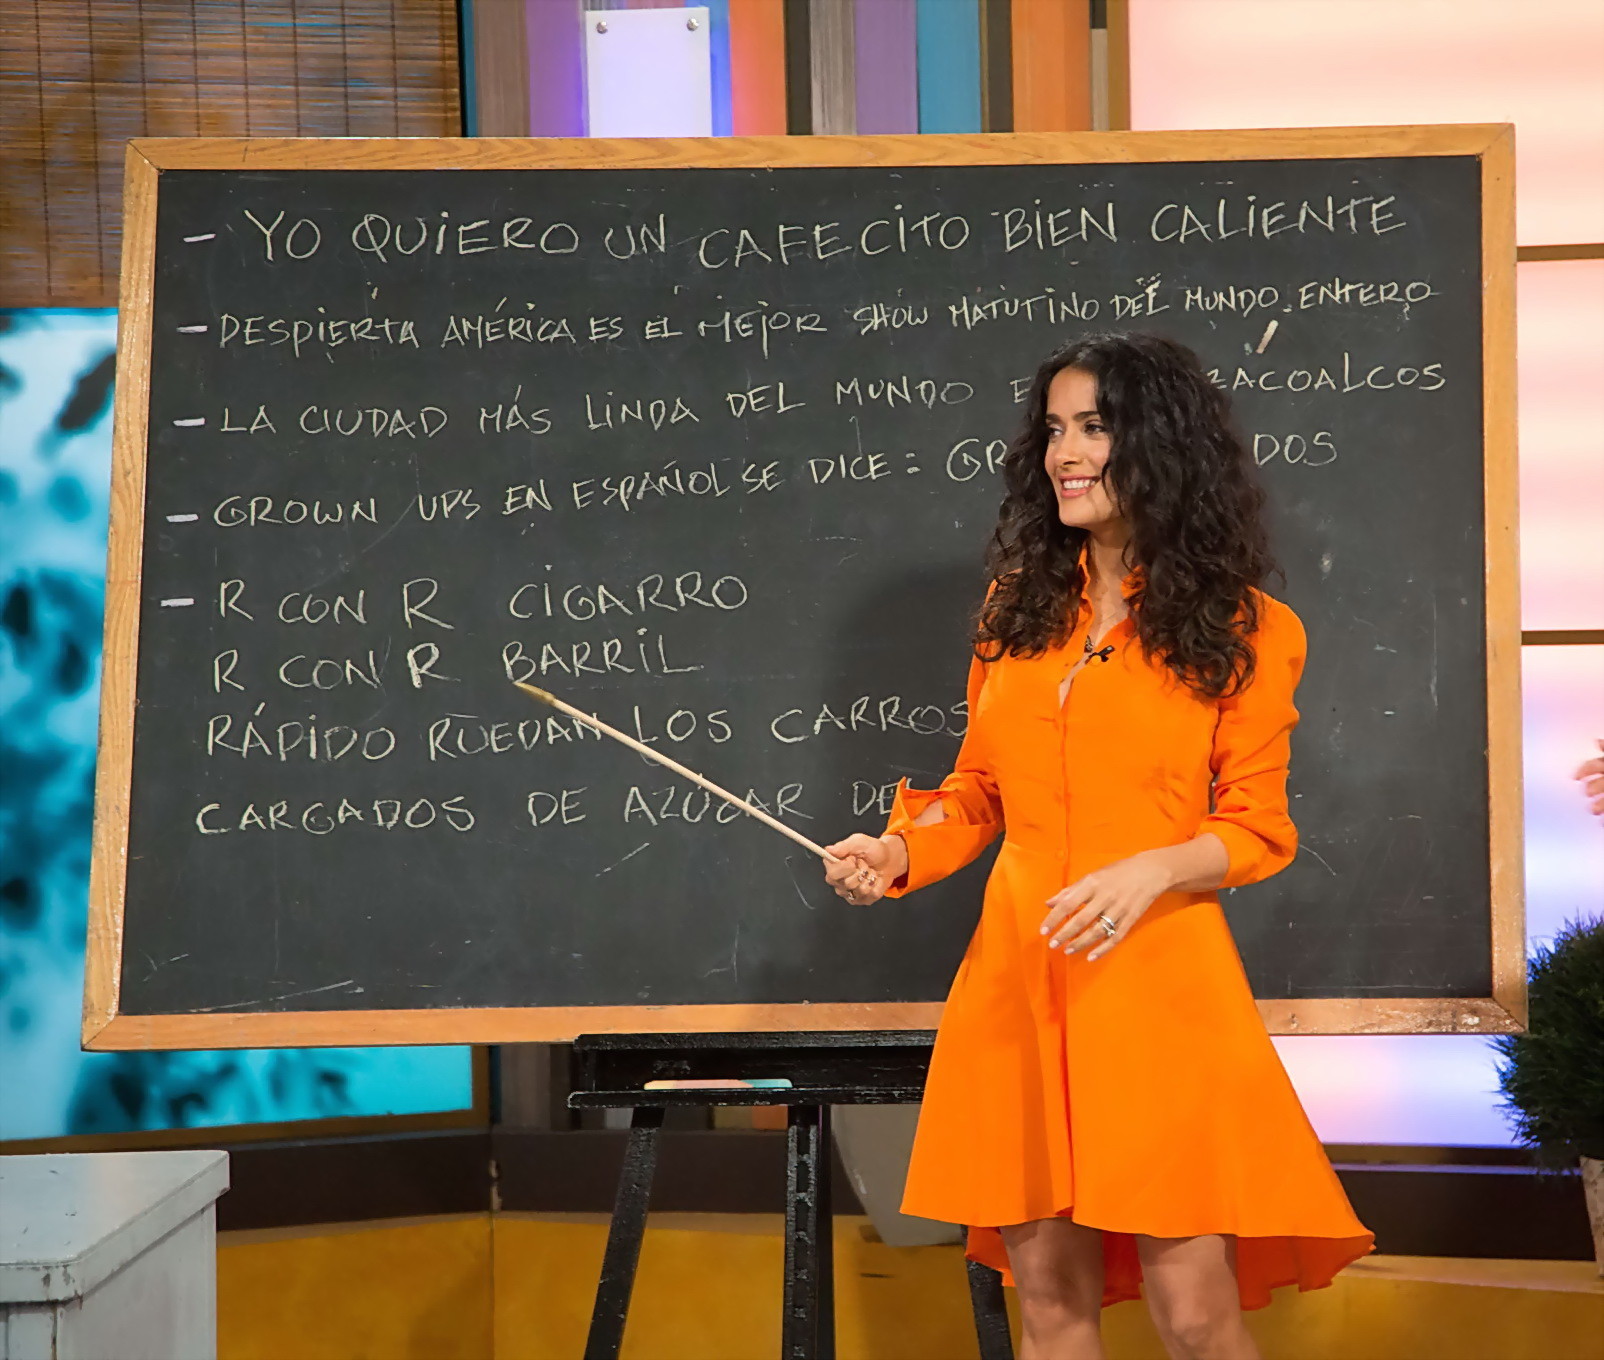 Salma hayek upskirt indossando breve abito arancione a despierta america show in miam
 #75225102